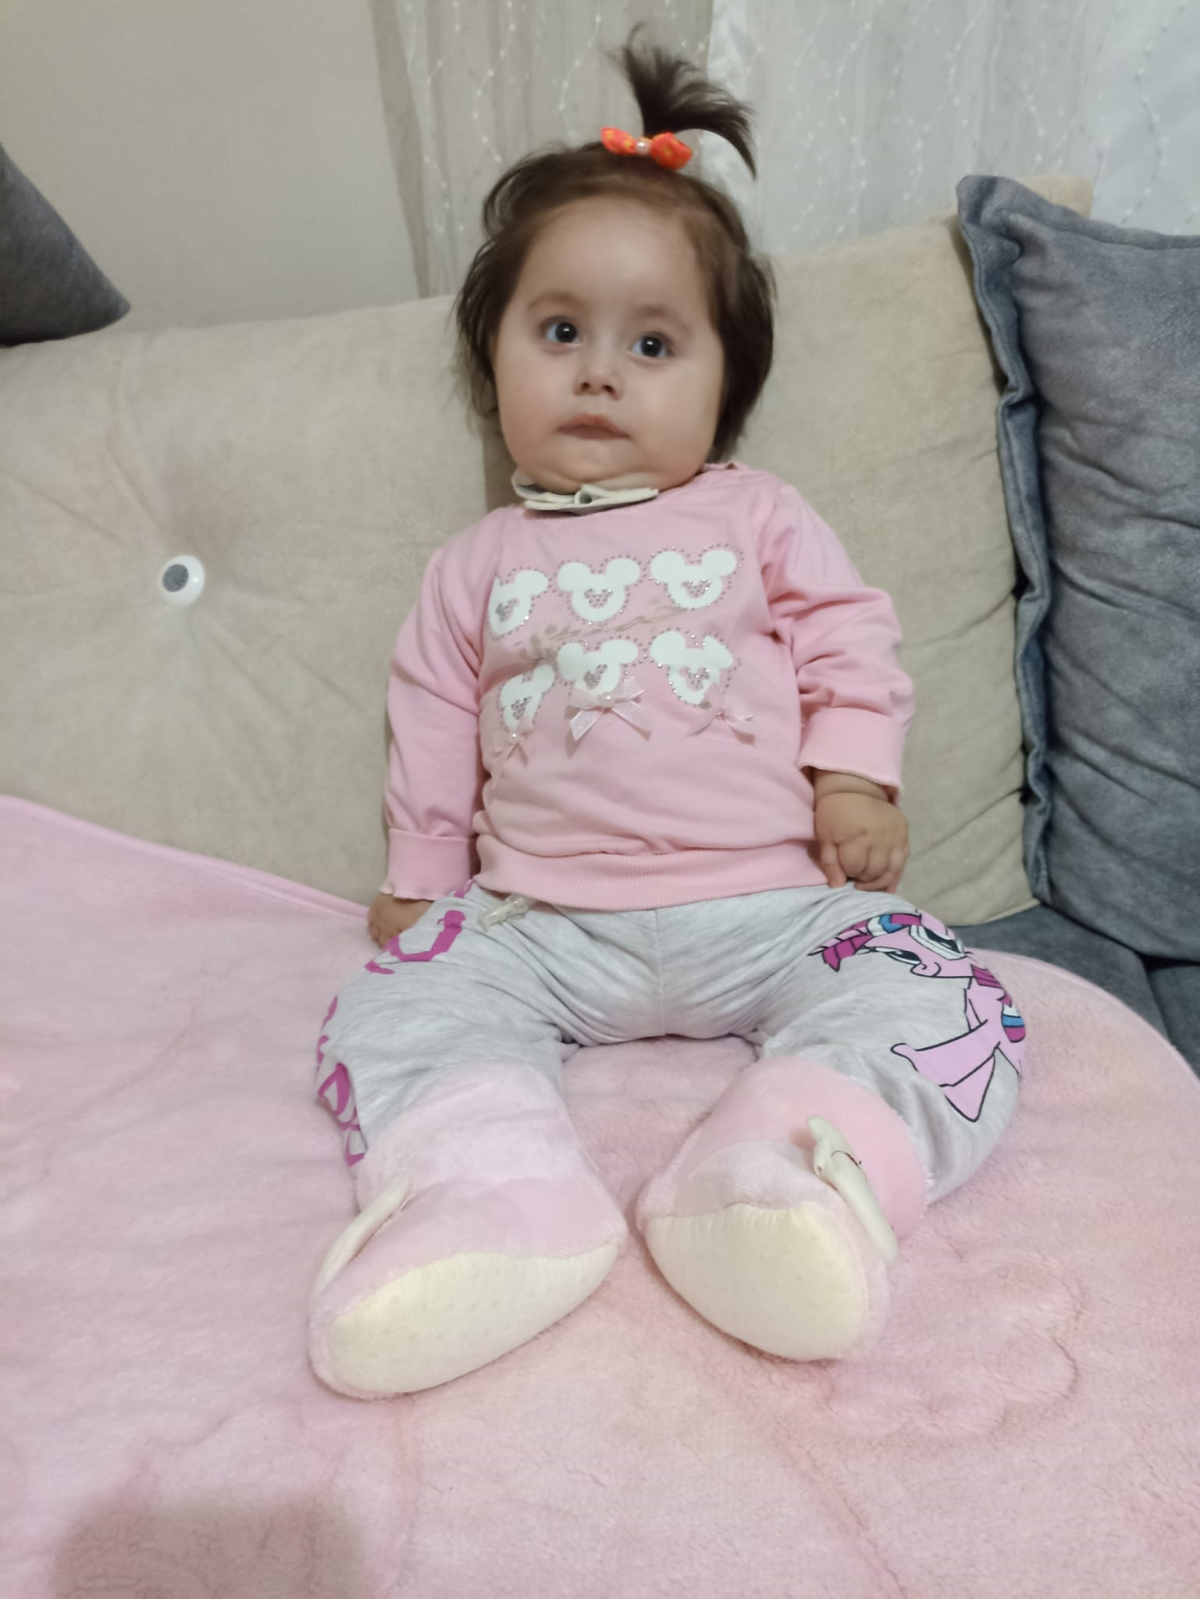 SMA hastası Sevinç Nur'un ailesi yardım bekliyor: Ölmesini istemiyoruz